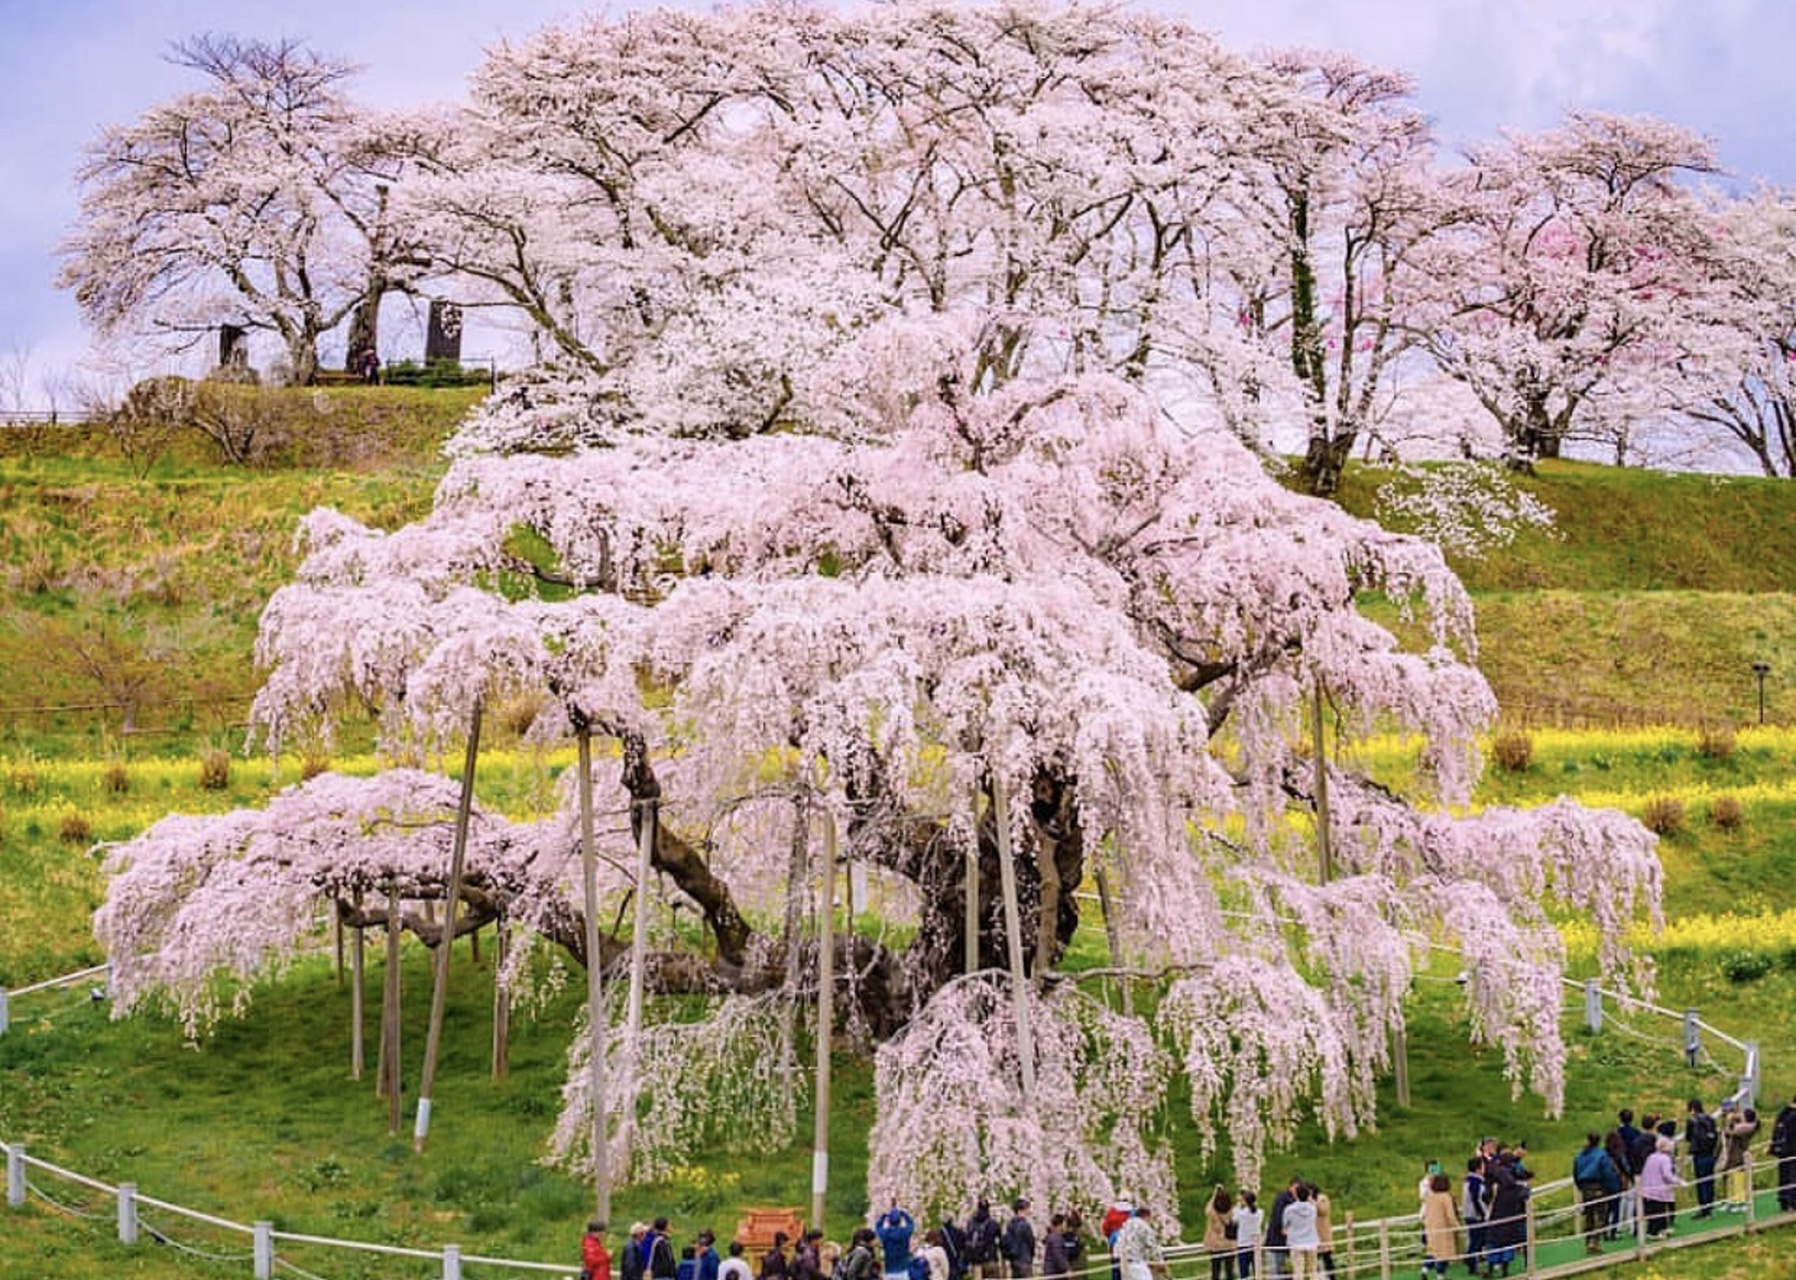 日本有三棵树龄超过一千年的樱花树,比日本历史还要长的这三株樱花树